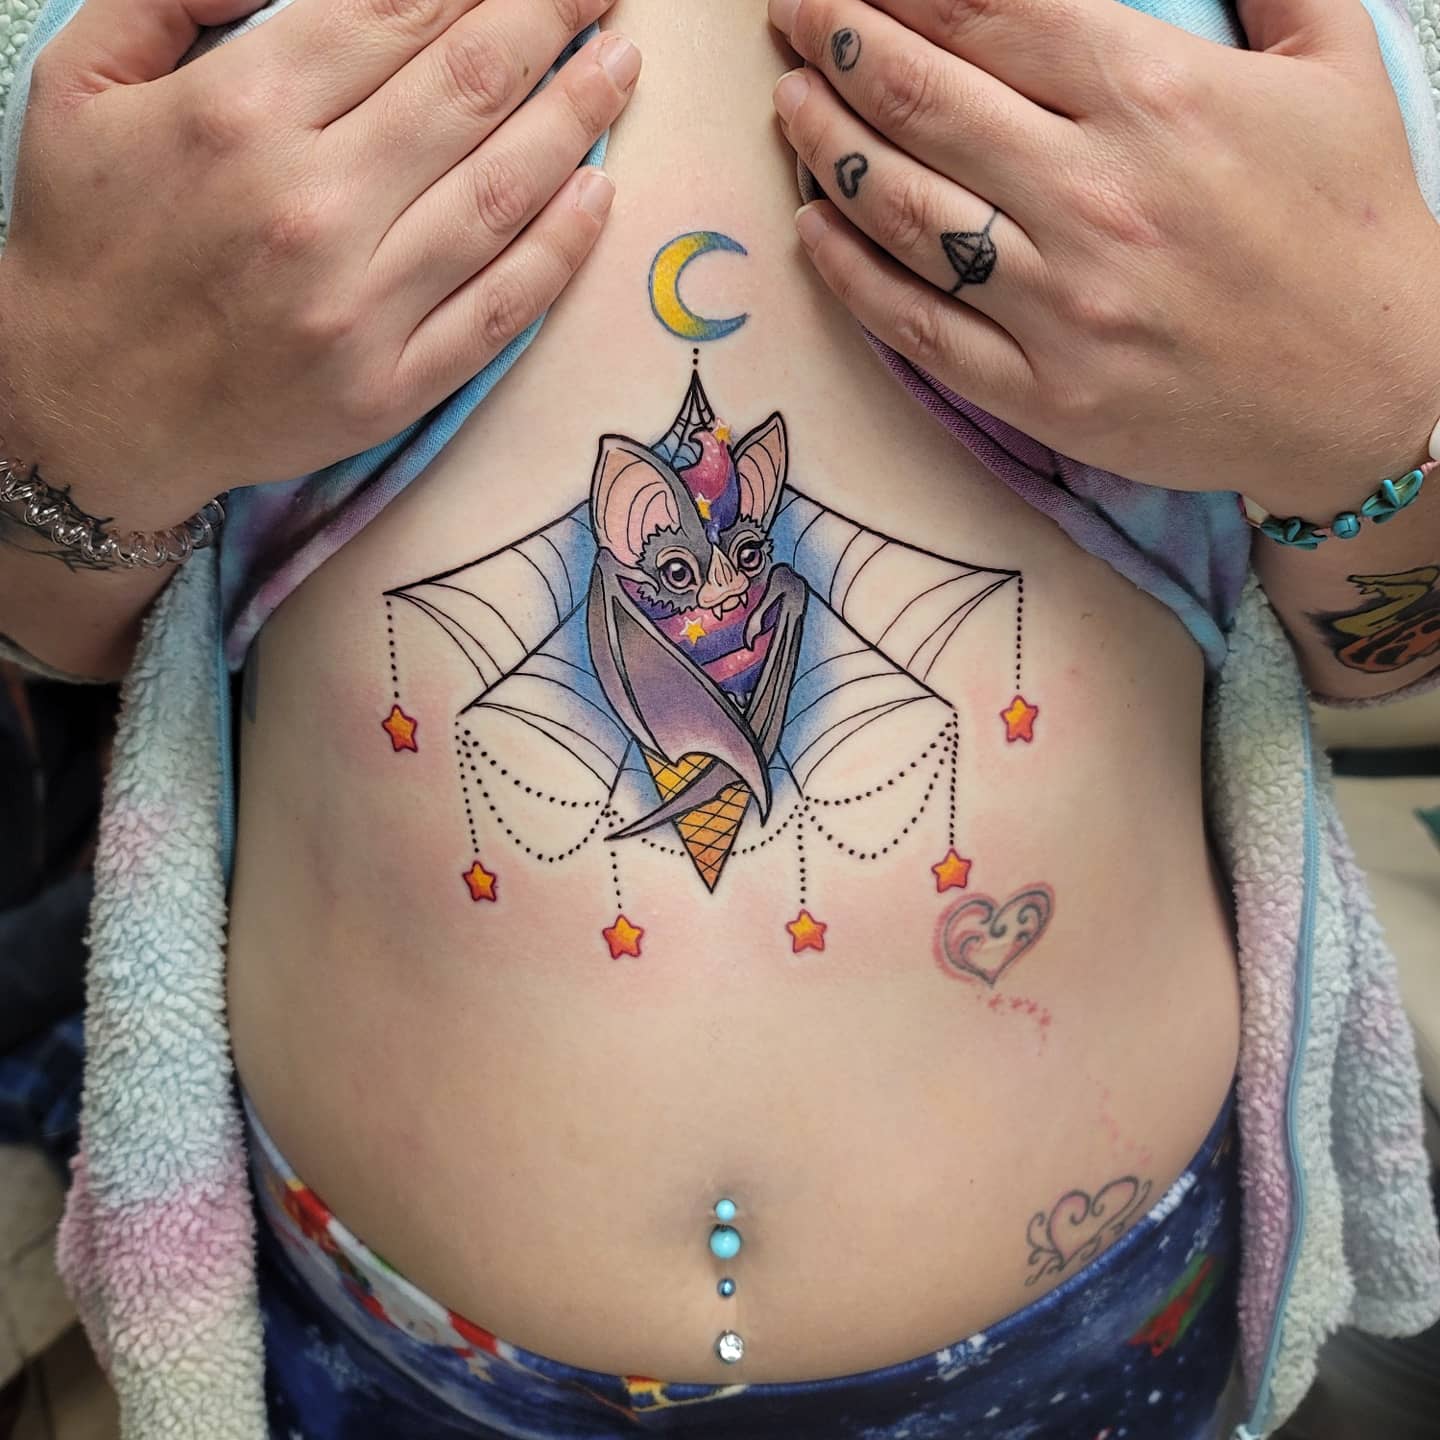 danica-casey-tattoo-artist-bat-colorful